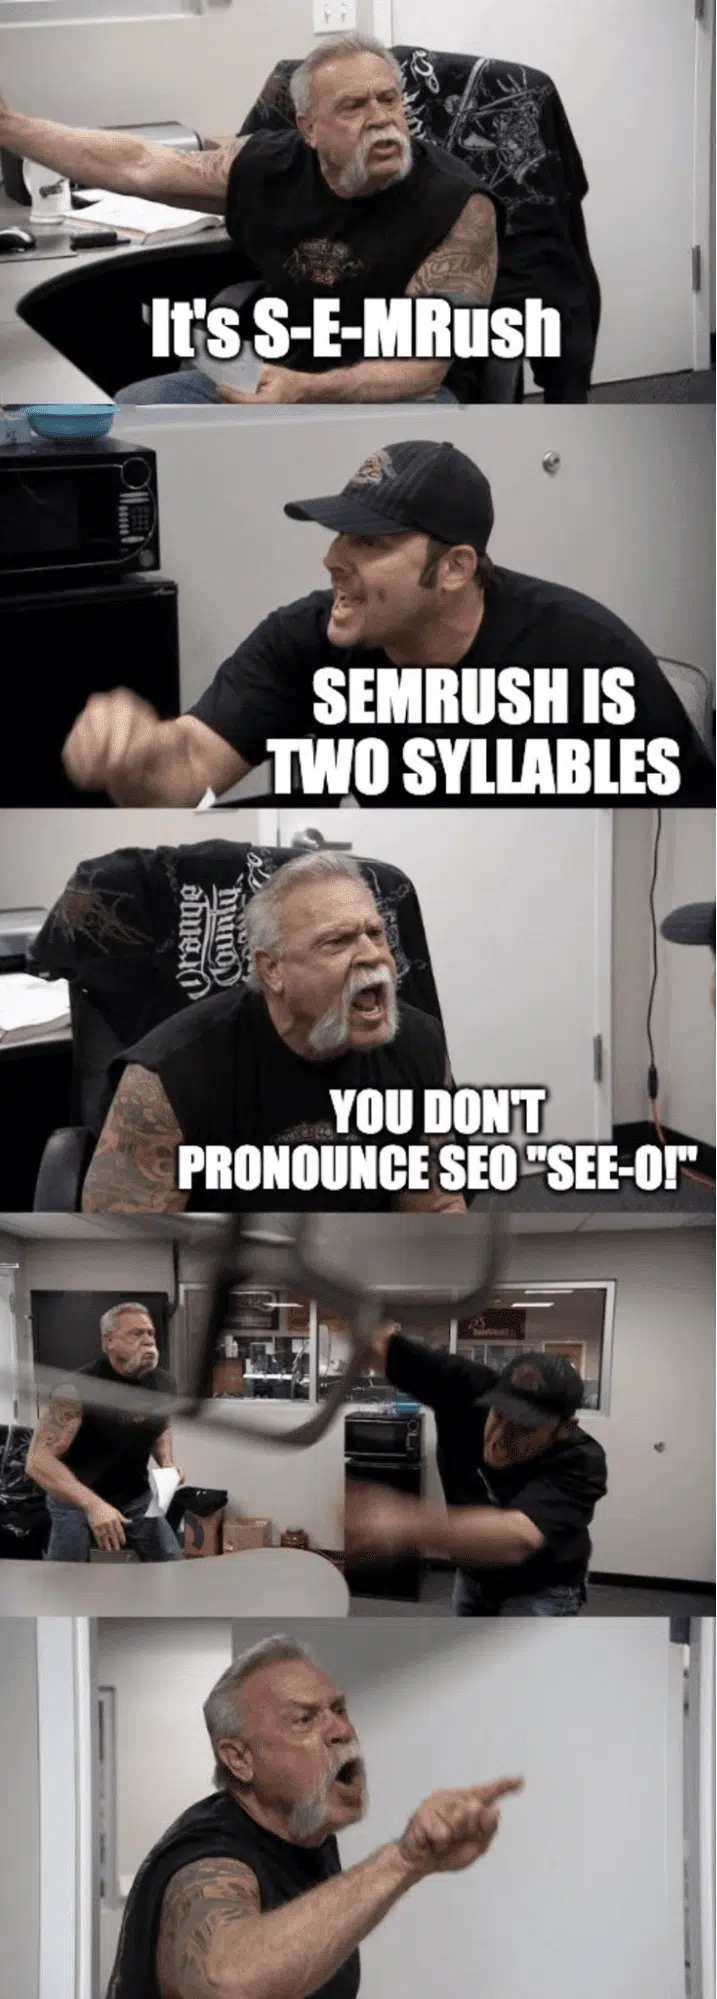 "SEMrush" vs "S E M rush" SEO meme